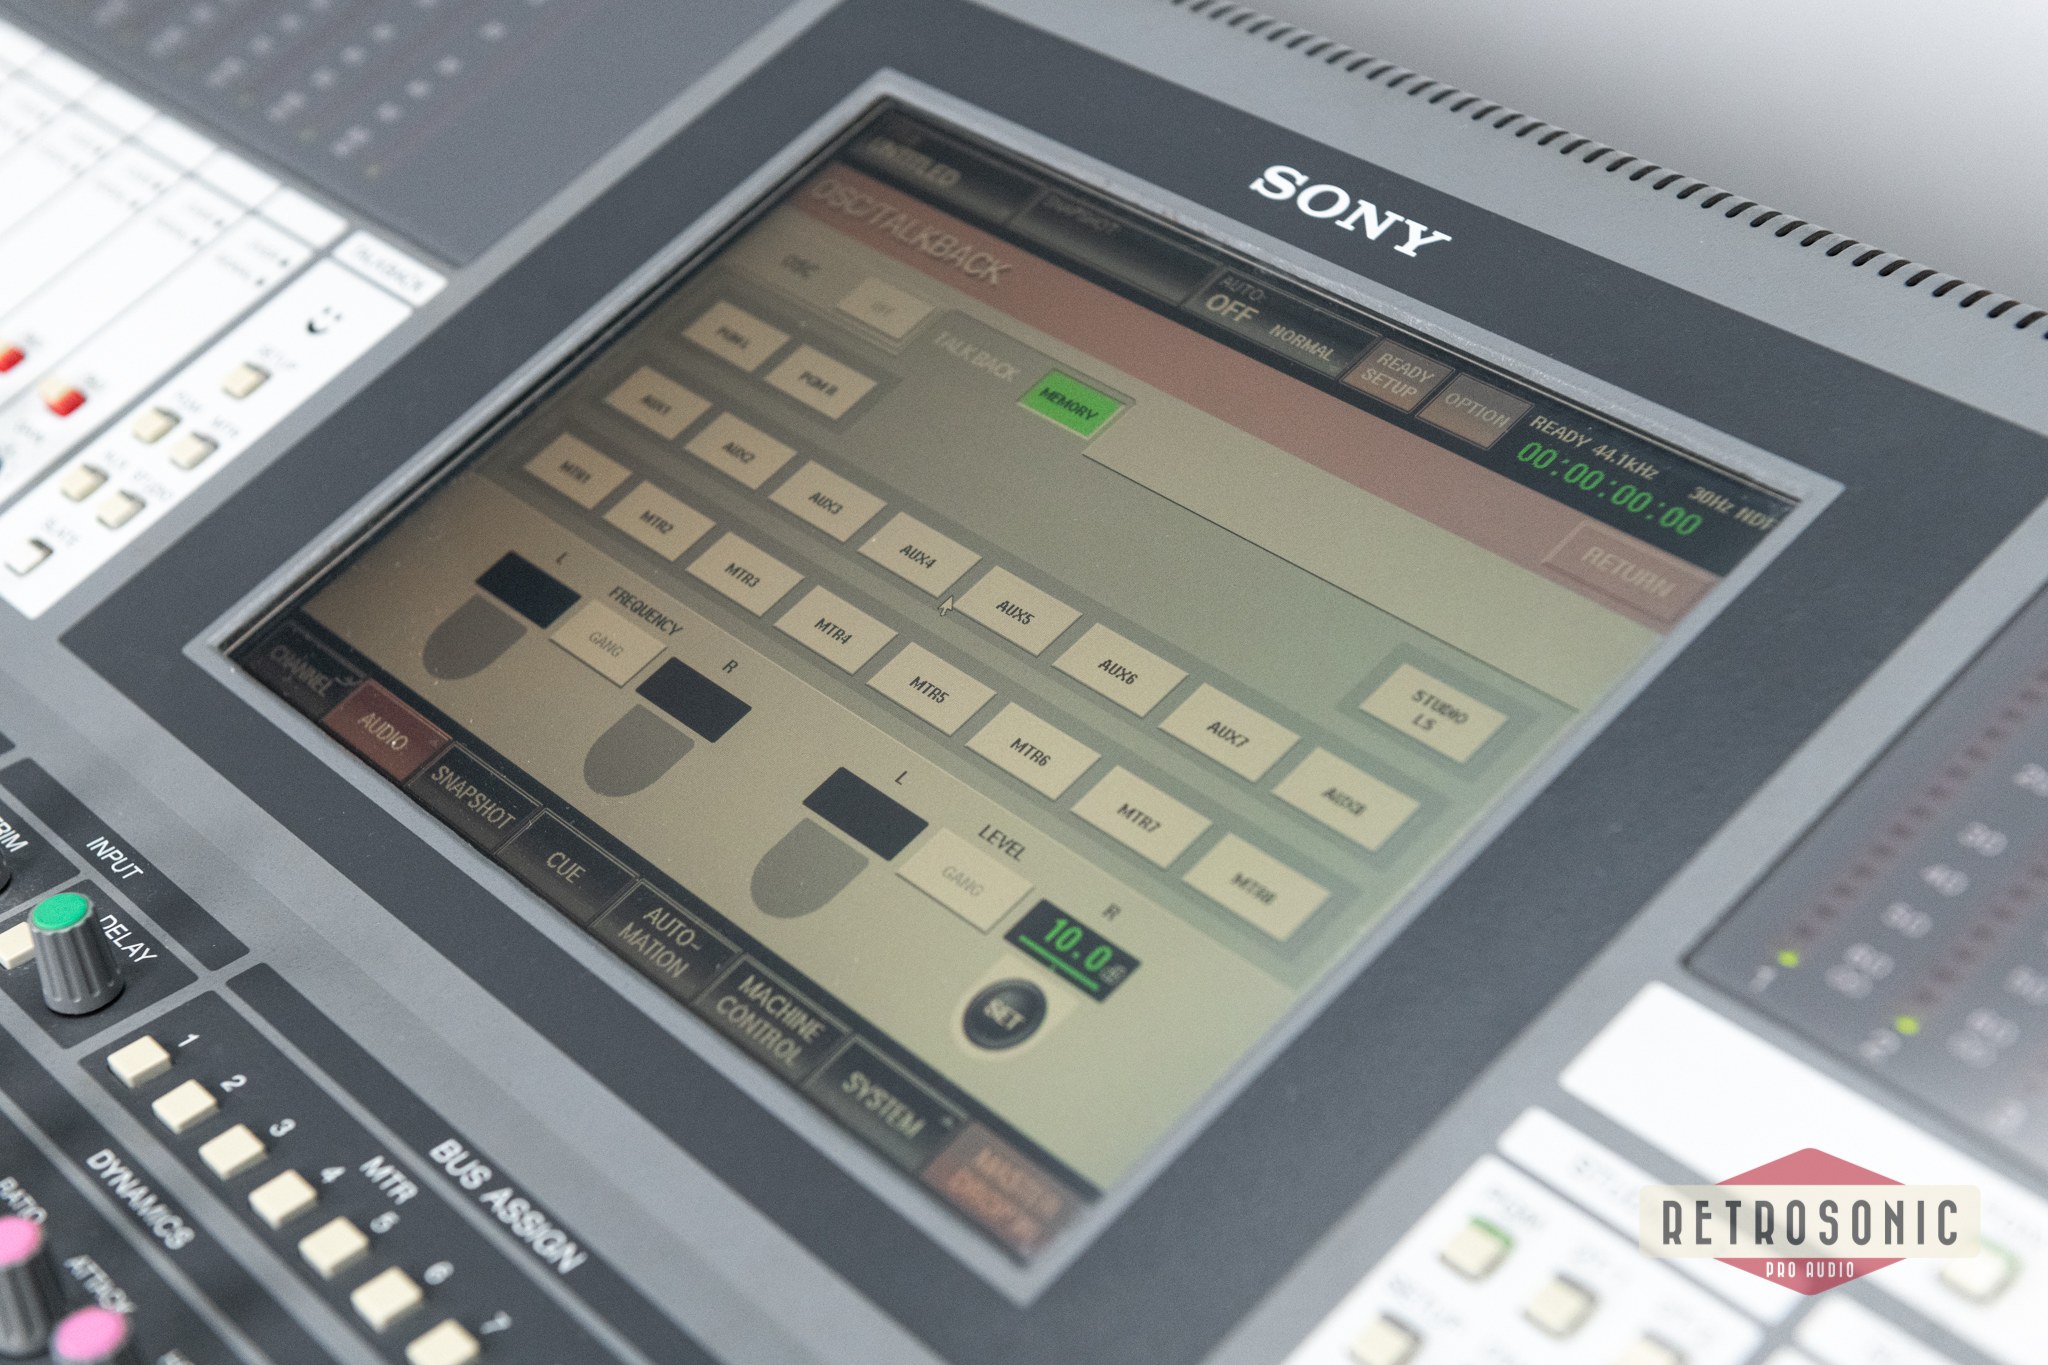 SONY DMX-R100 Digital Mixing Console